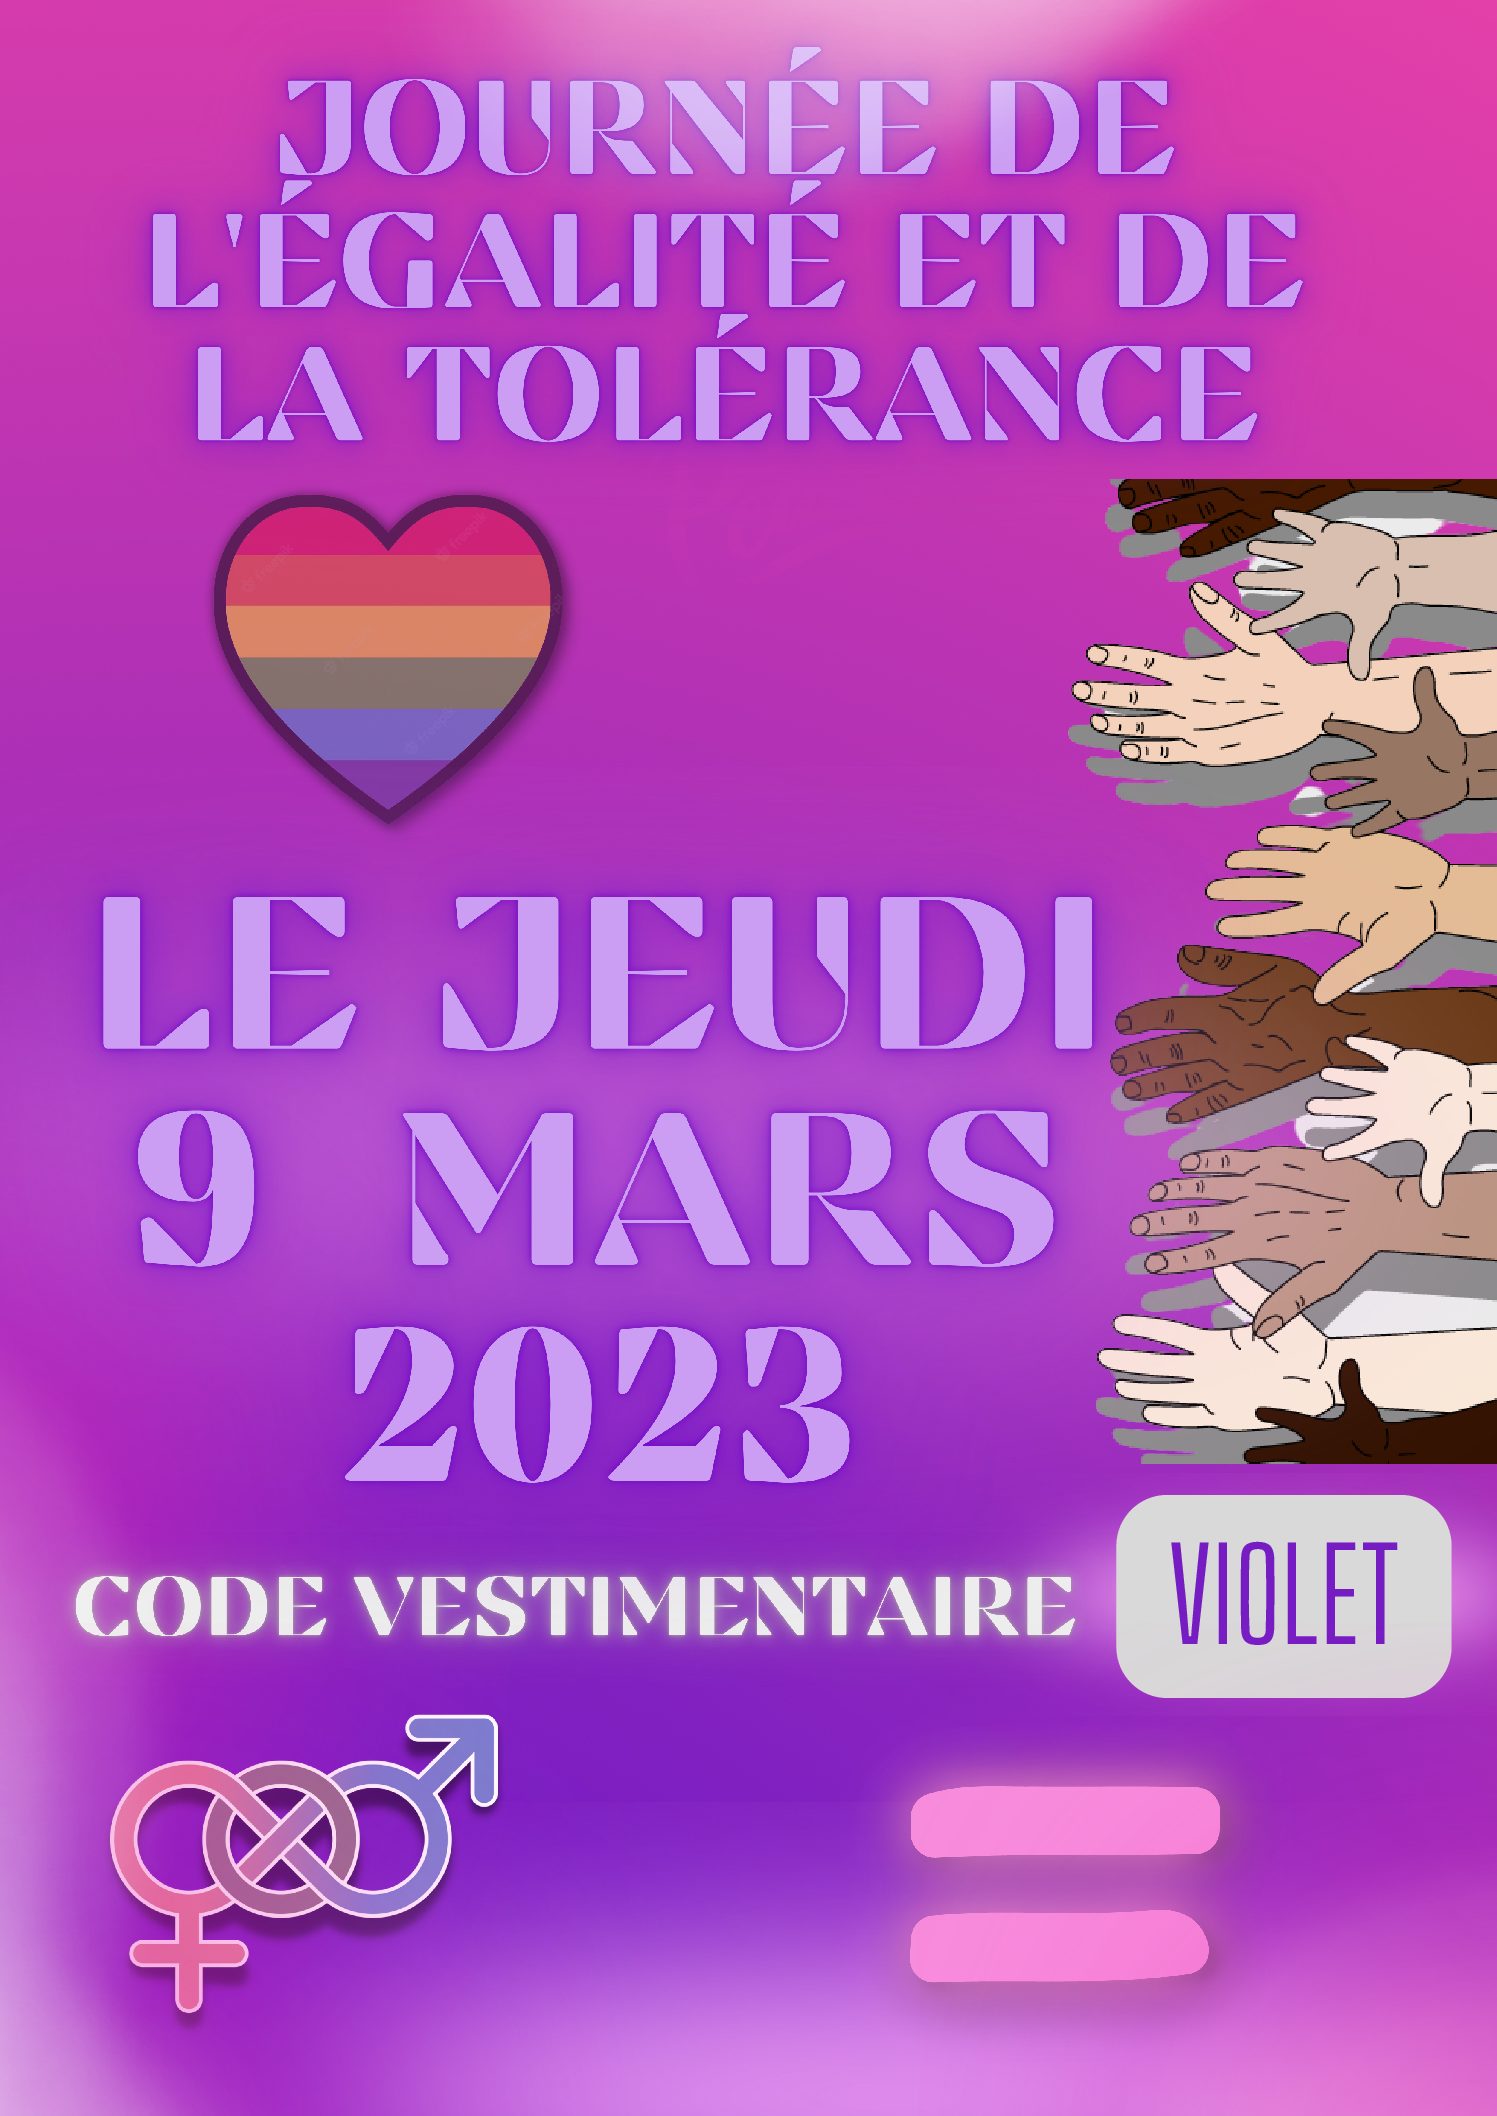 Journée de la tolérance et de l’égalité